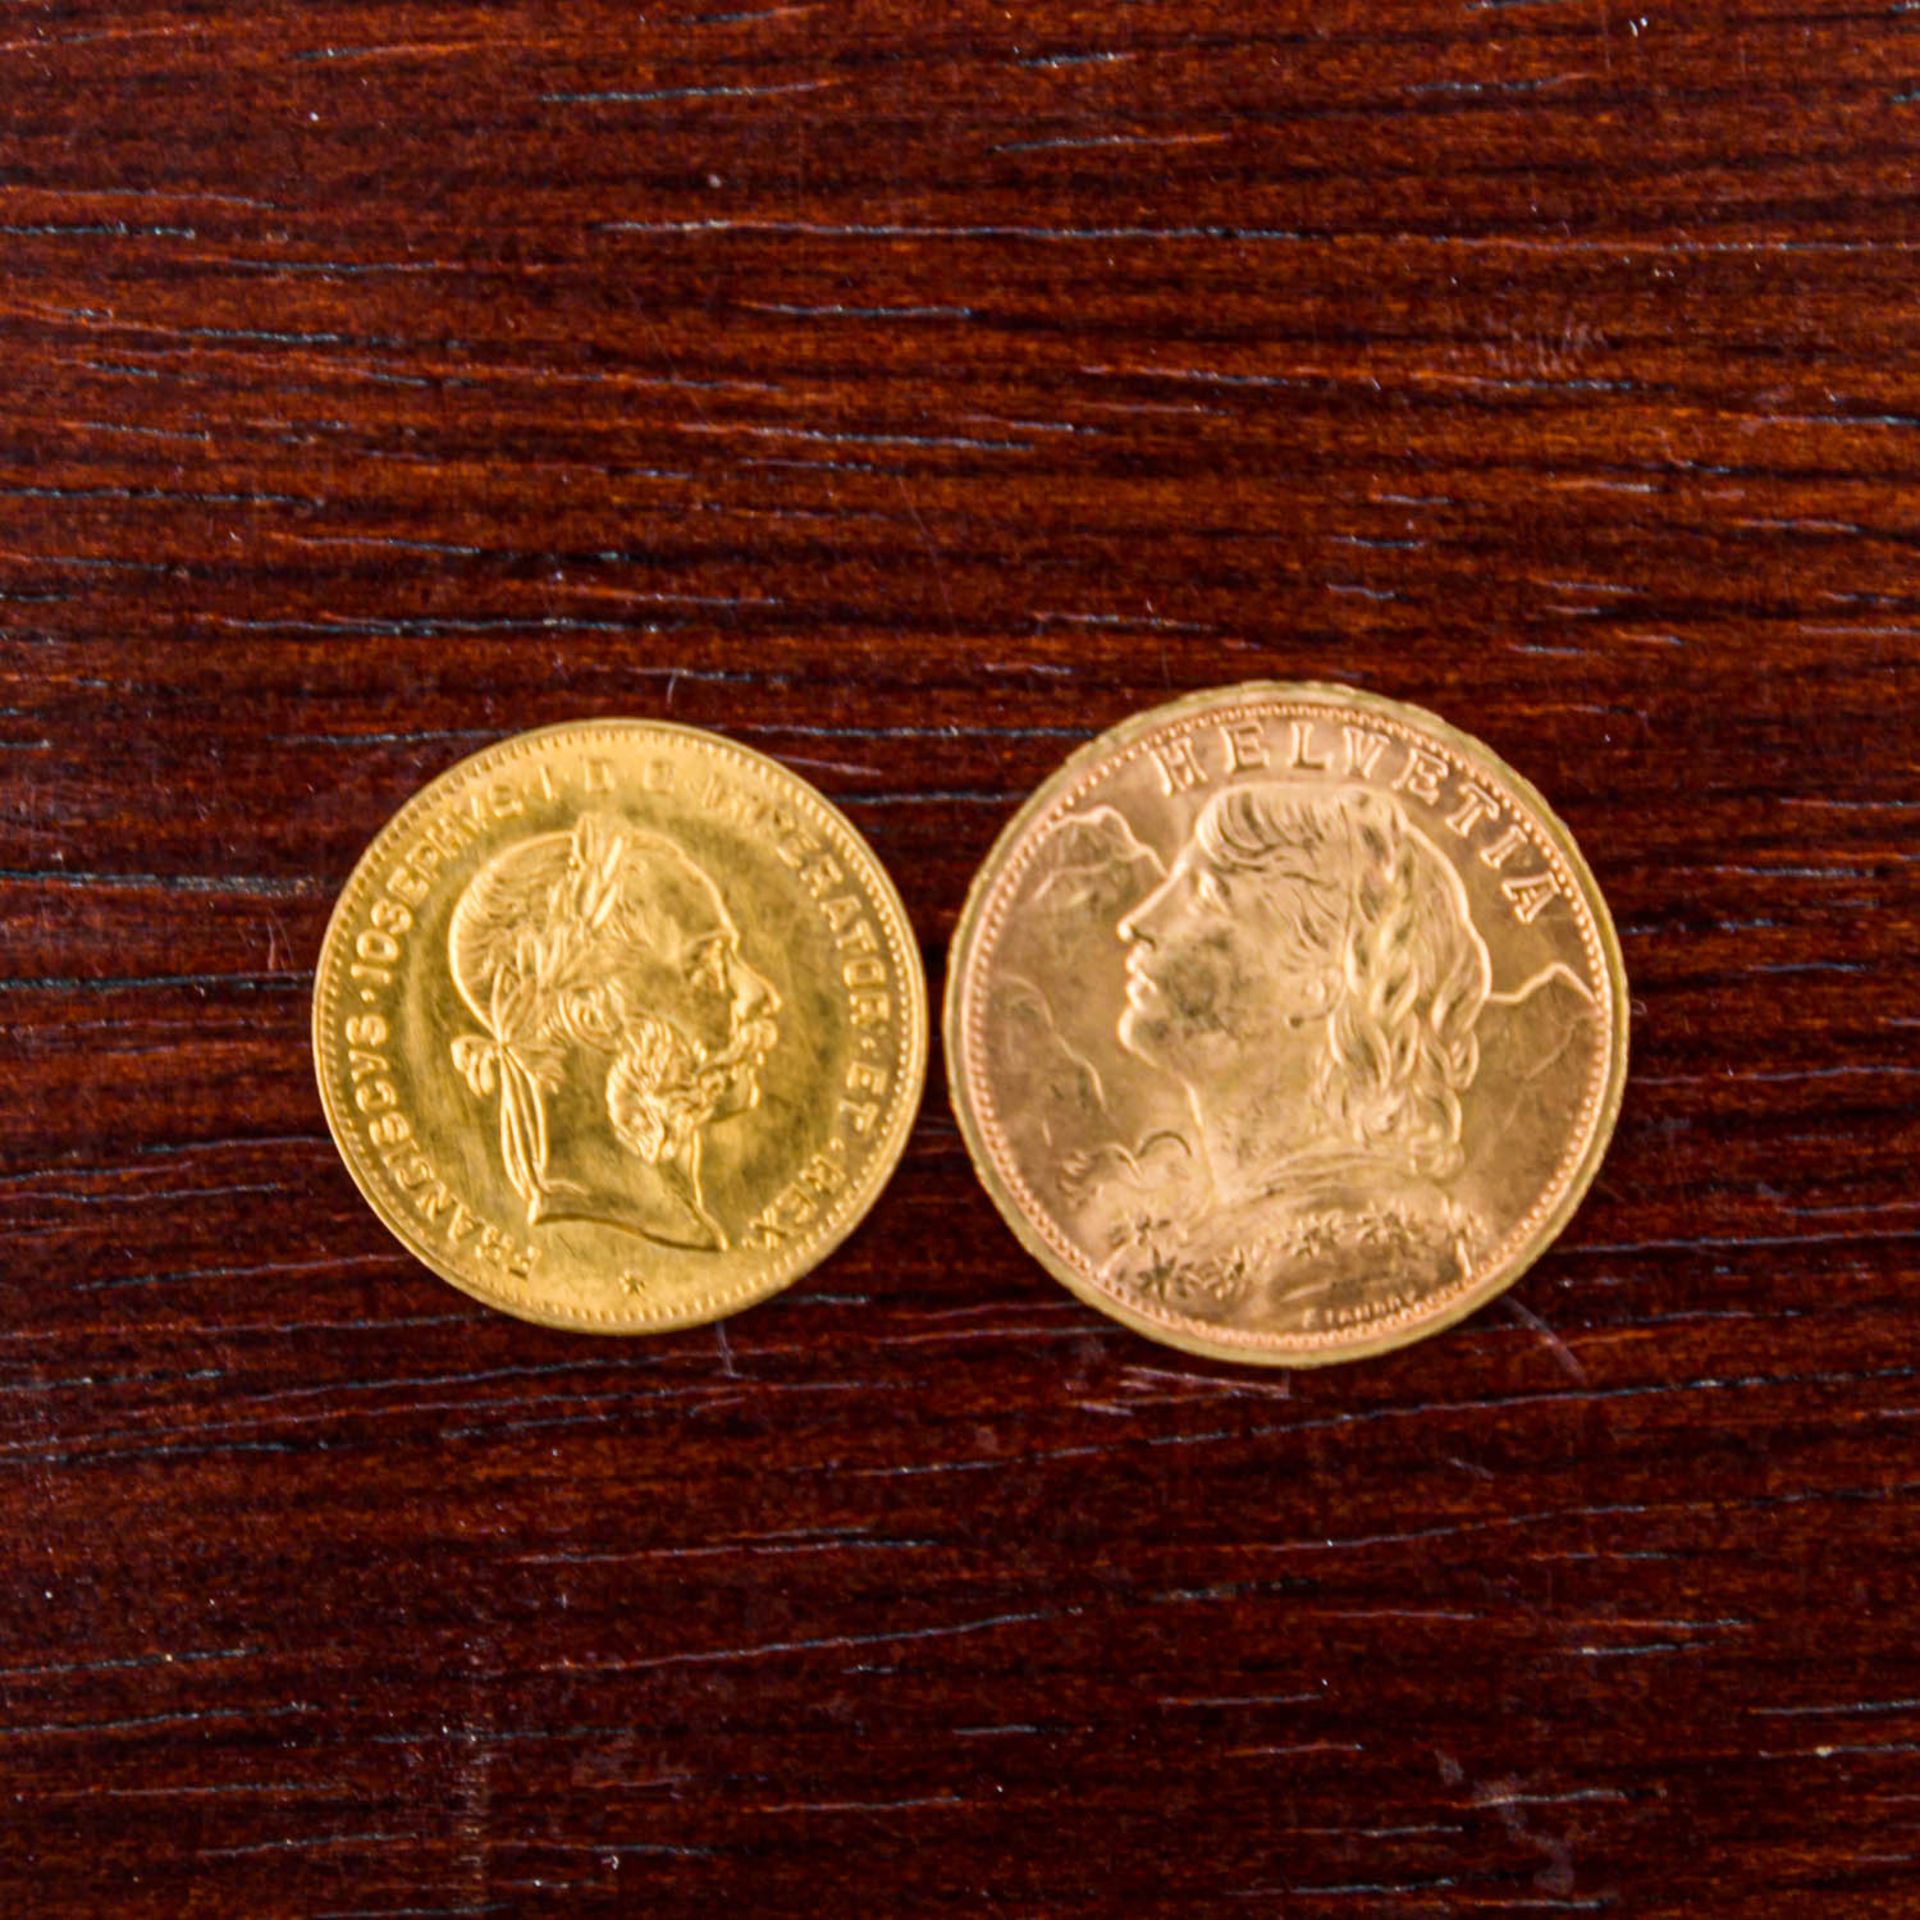 Gemischtes kleines Münzkonvolut -1 x Schweiz - 20 Franken 1947/B, Vreneli, ss-vz, fleckig, 5,8g GOLD - Bild 3 aus 3